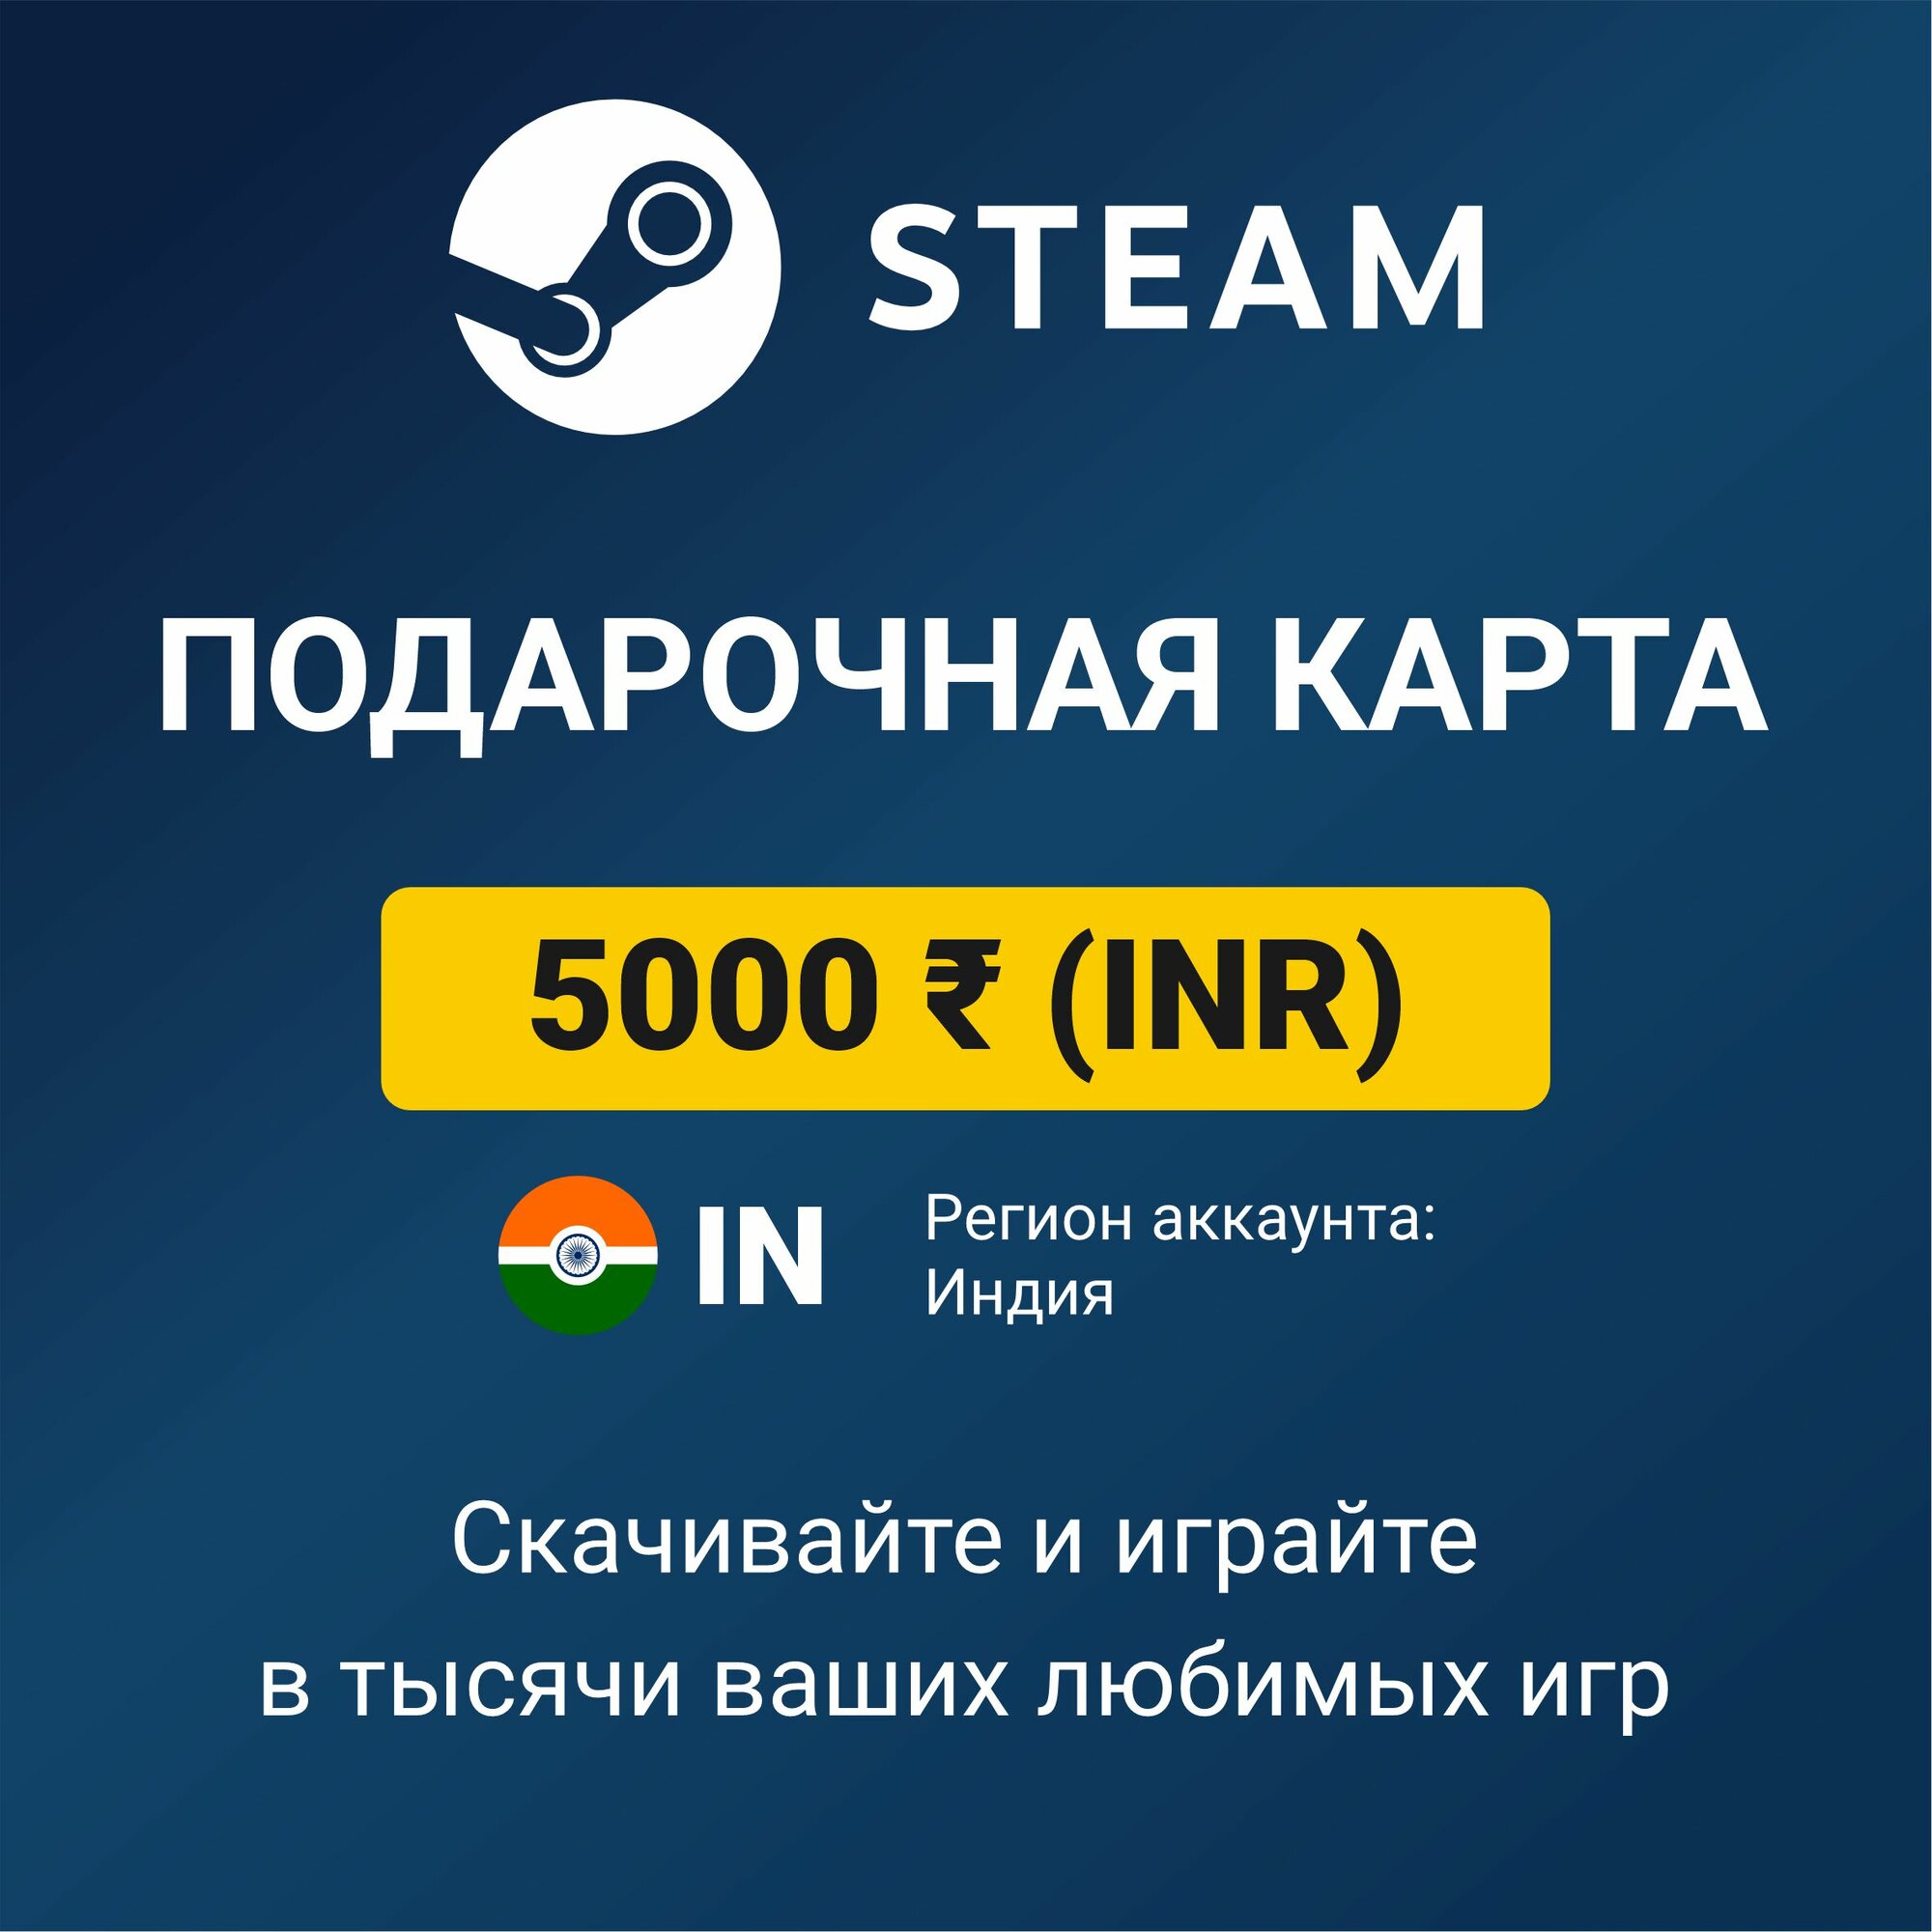 Пополнение кошелька Steam 2500 INR (регион аккаунта: Индия) цифровой код активации/подарочная карта